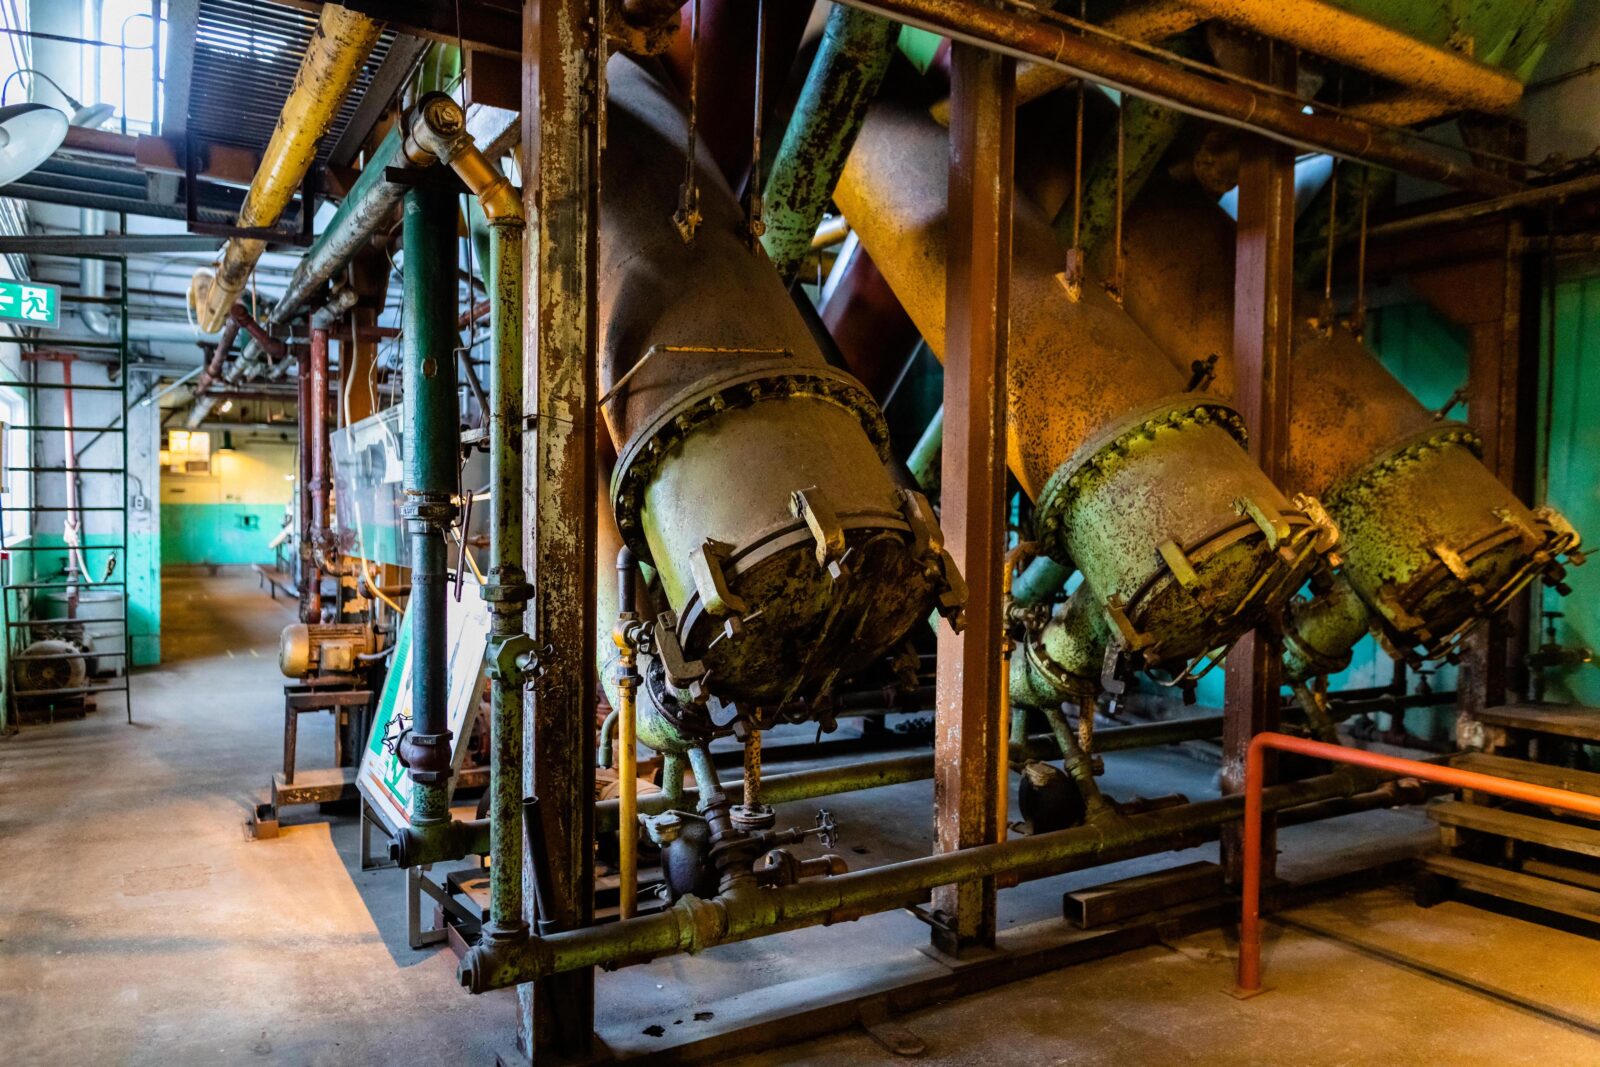 Giant evaporator machines used to refine herring oil